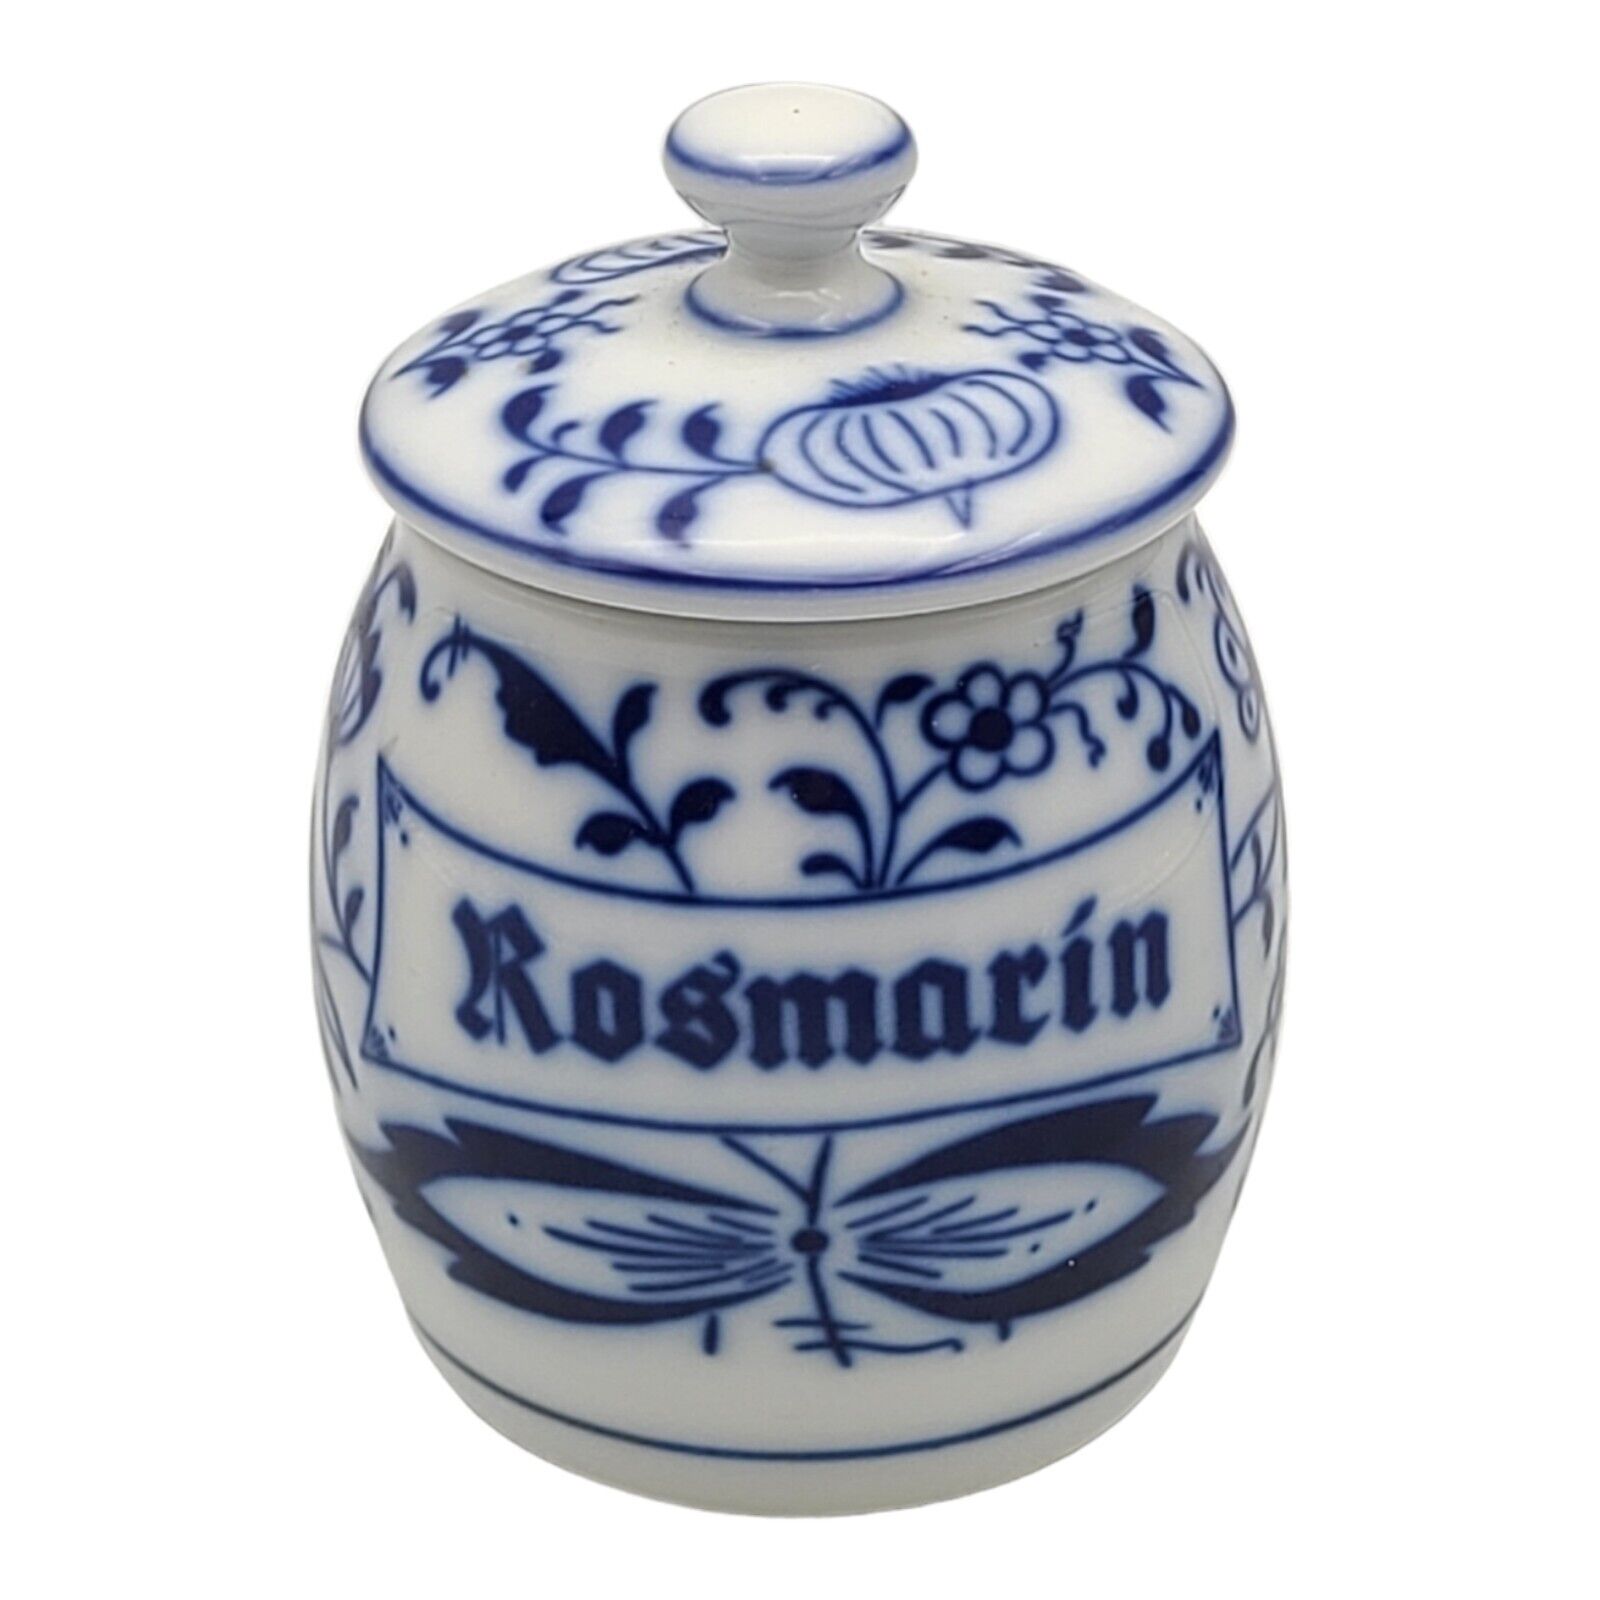 Gerold Porcelain Rosemary Jar West Germany Rosmarin Blue Porcelain w/ Lid Floral